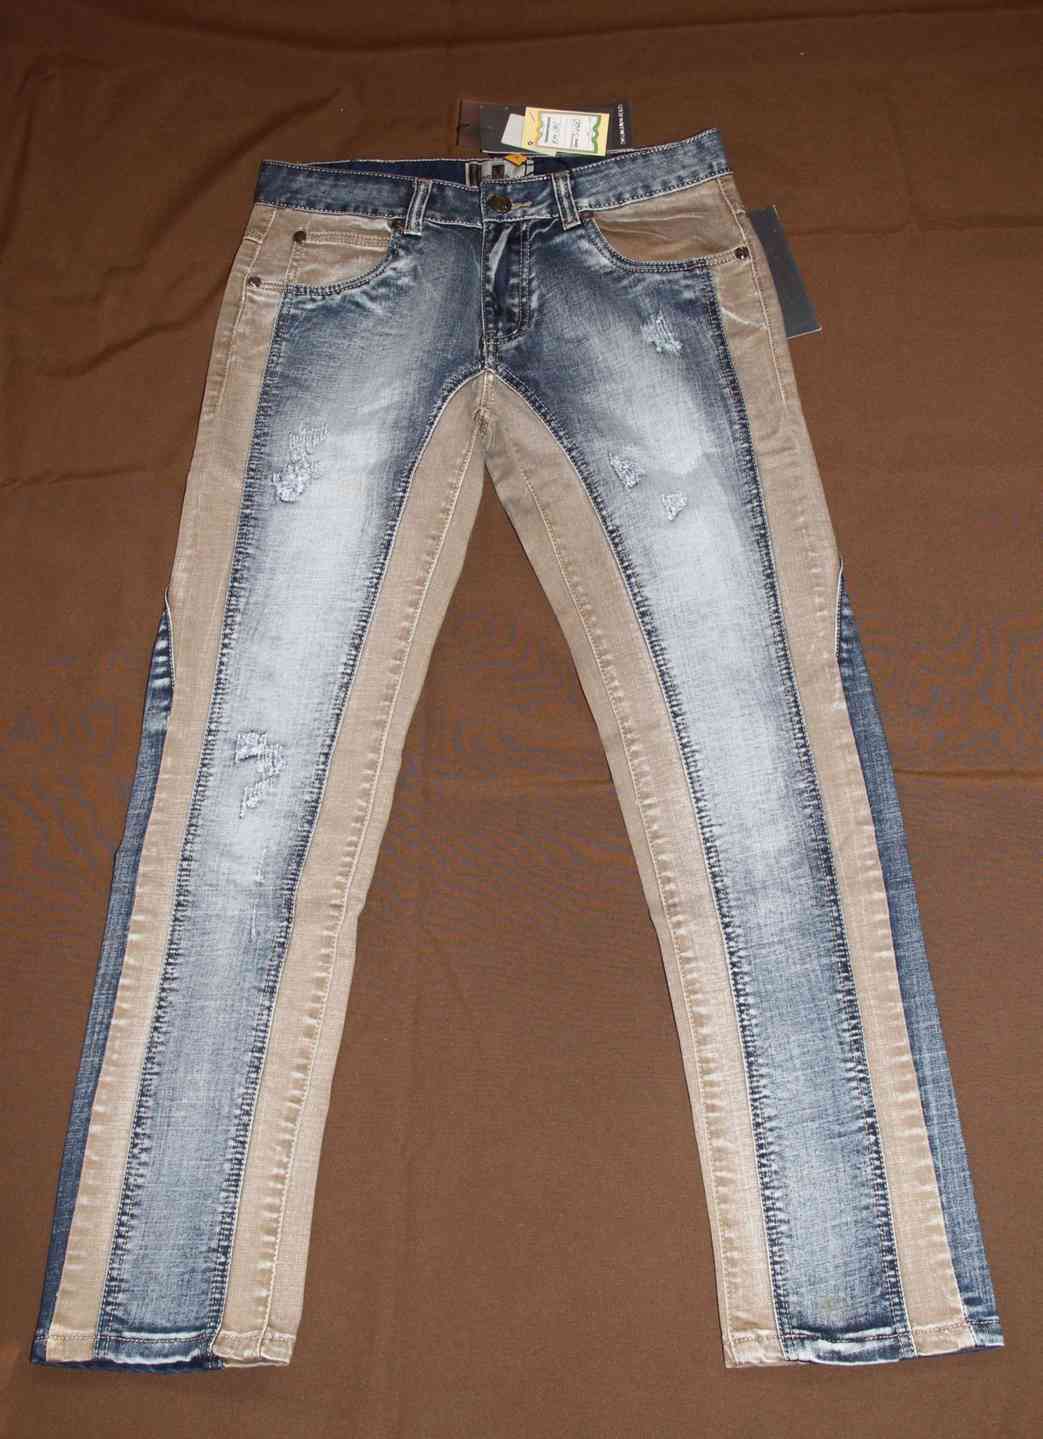 Чем расшить джинсы по бокам